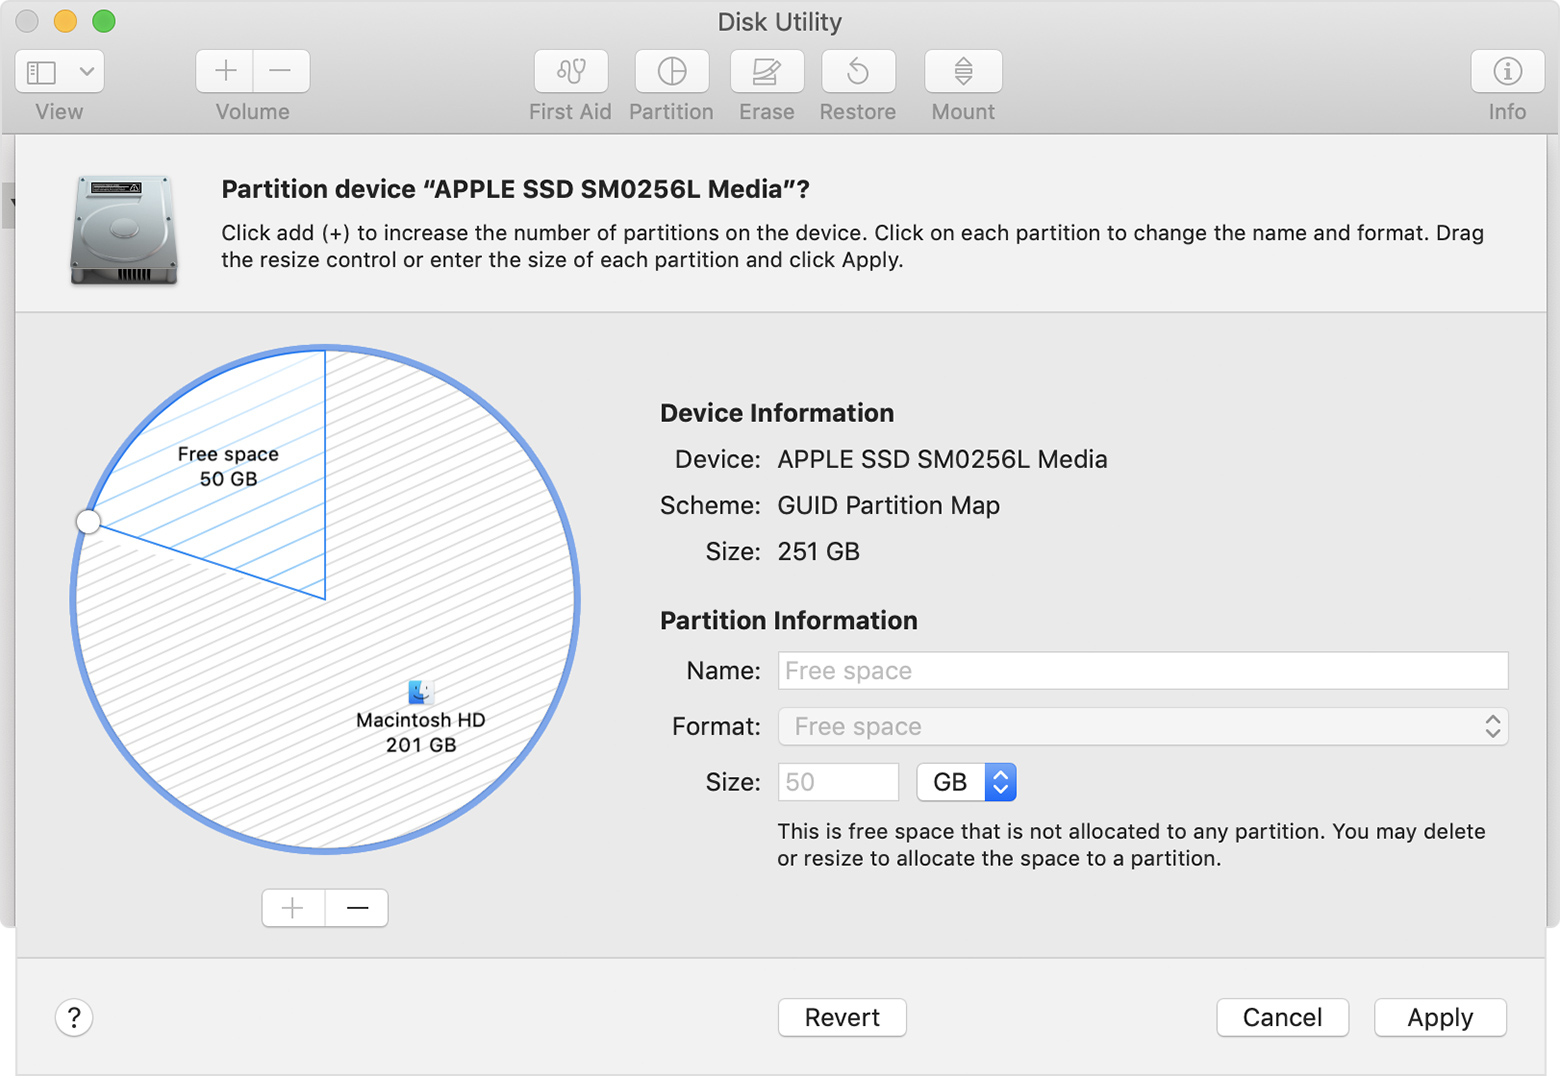 Partitionner un disque physique dans Utilitaire de disque sur Mac -  Assistance Apple (LU)